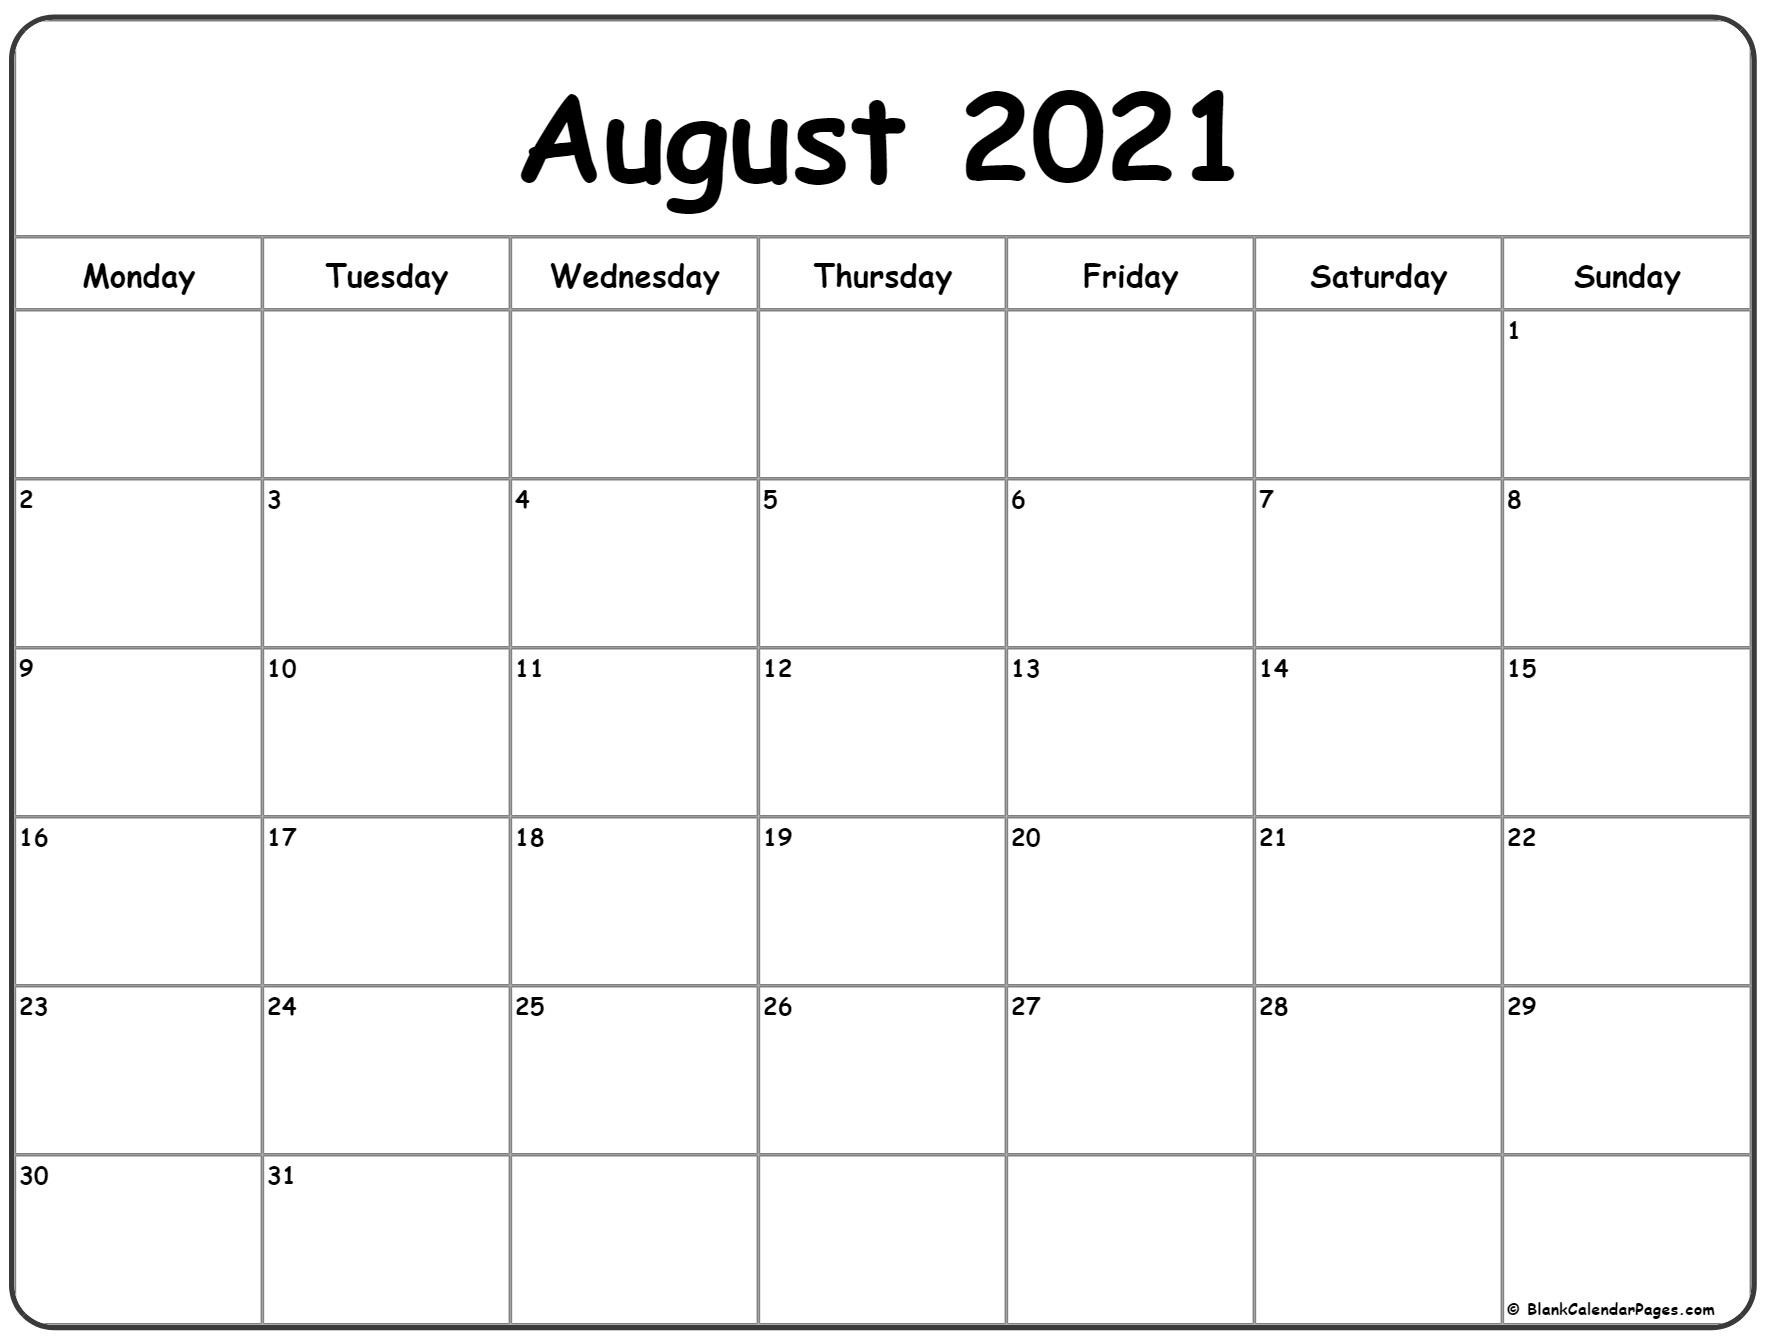 August 2021 Calendar - Calendar 2021-Kalender August 2021 Schwangerschaft